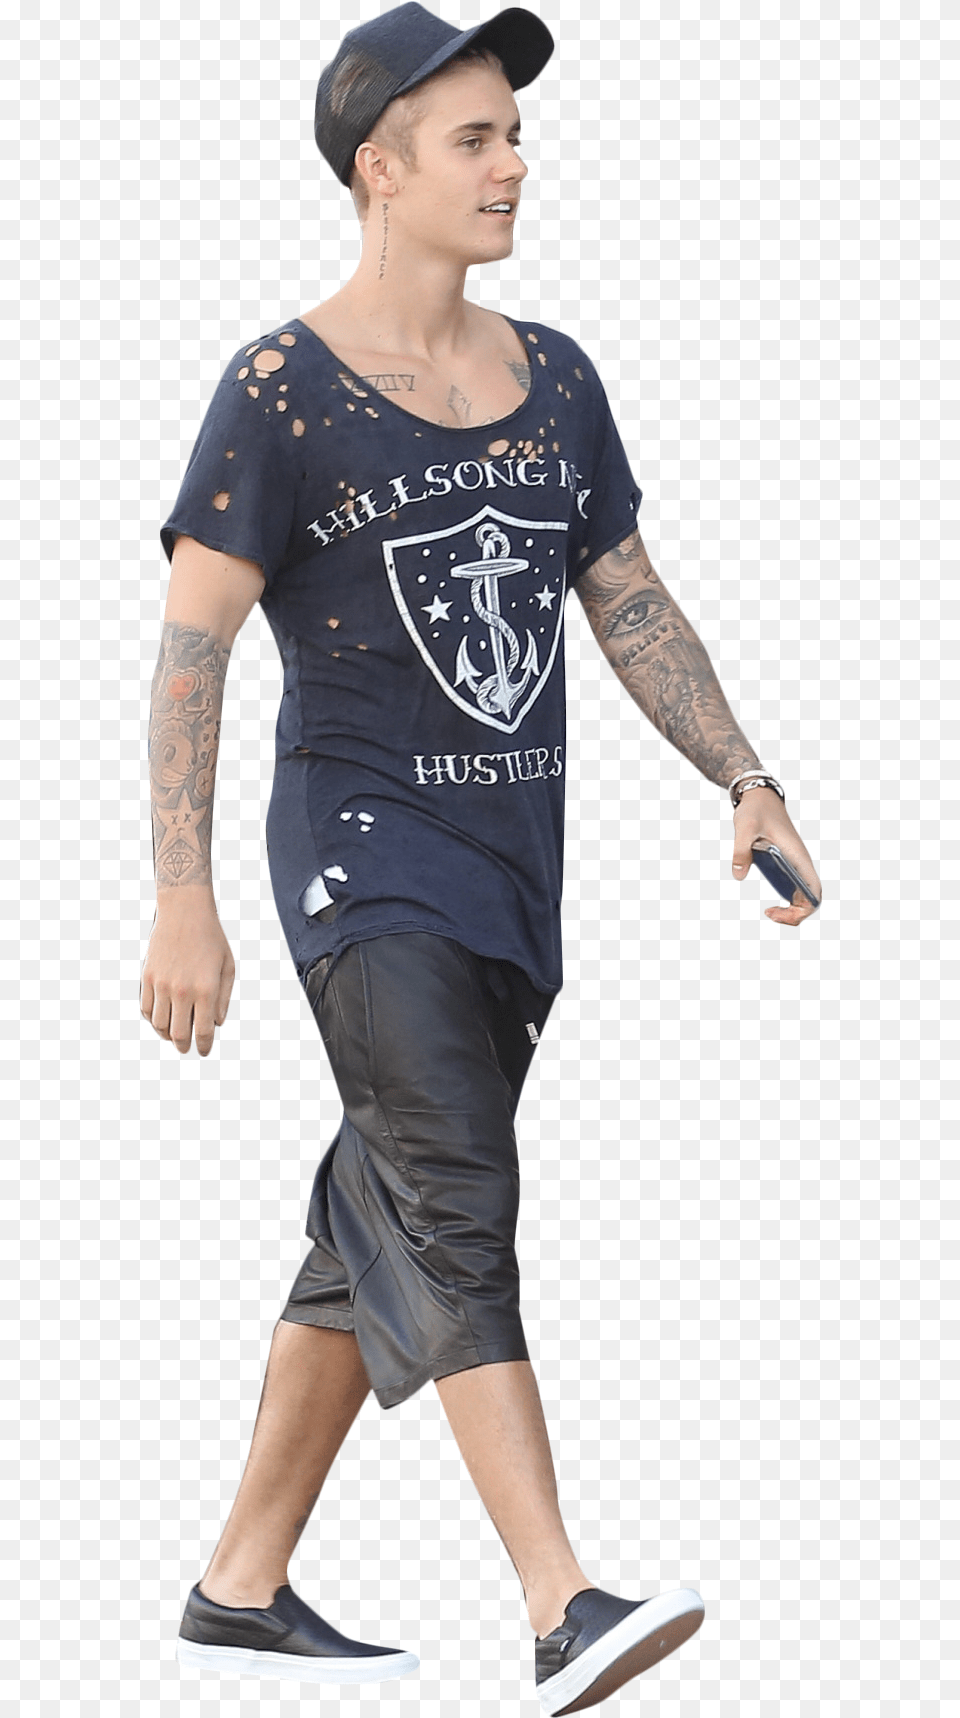 Justin Bieber Walking Image Background Walking People Hd, Baseball Cap, Tattoo, Cap, Clothing Free Png Download